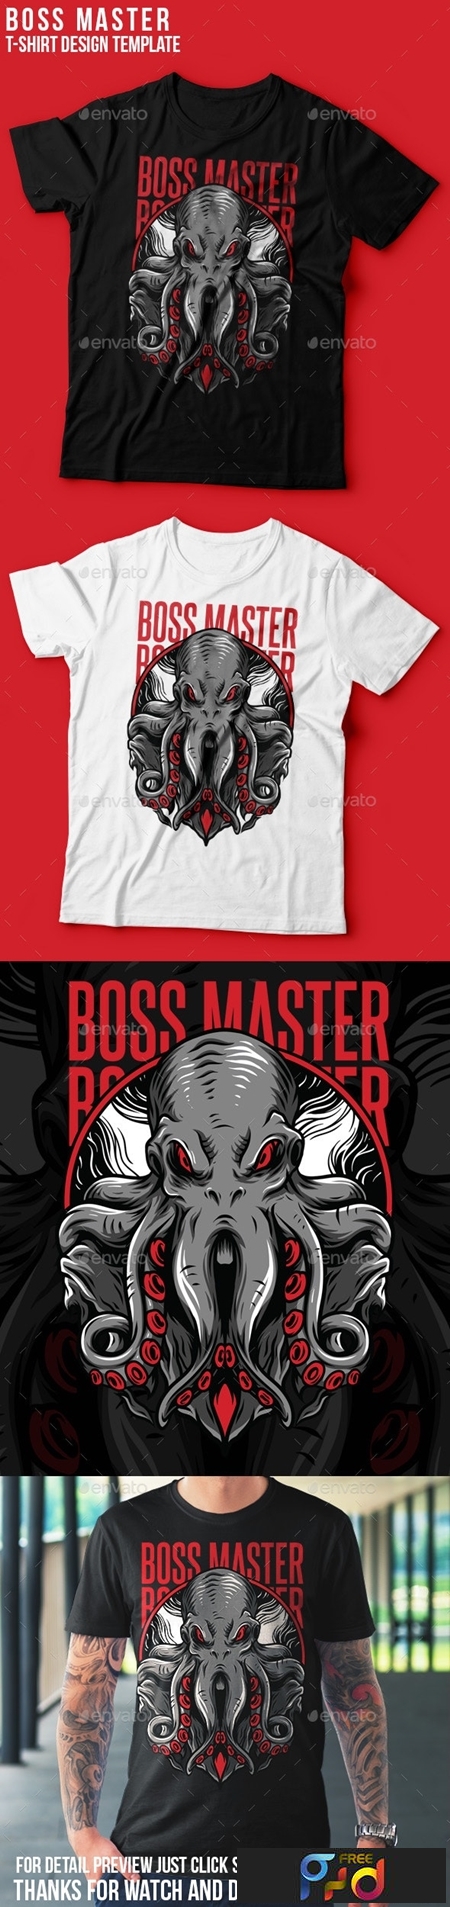 FreePsdVn.com 1906147 VECTOR boss master t shirt design 23843048